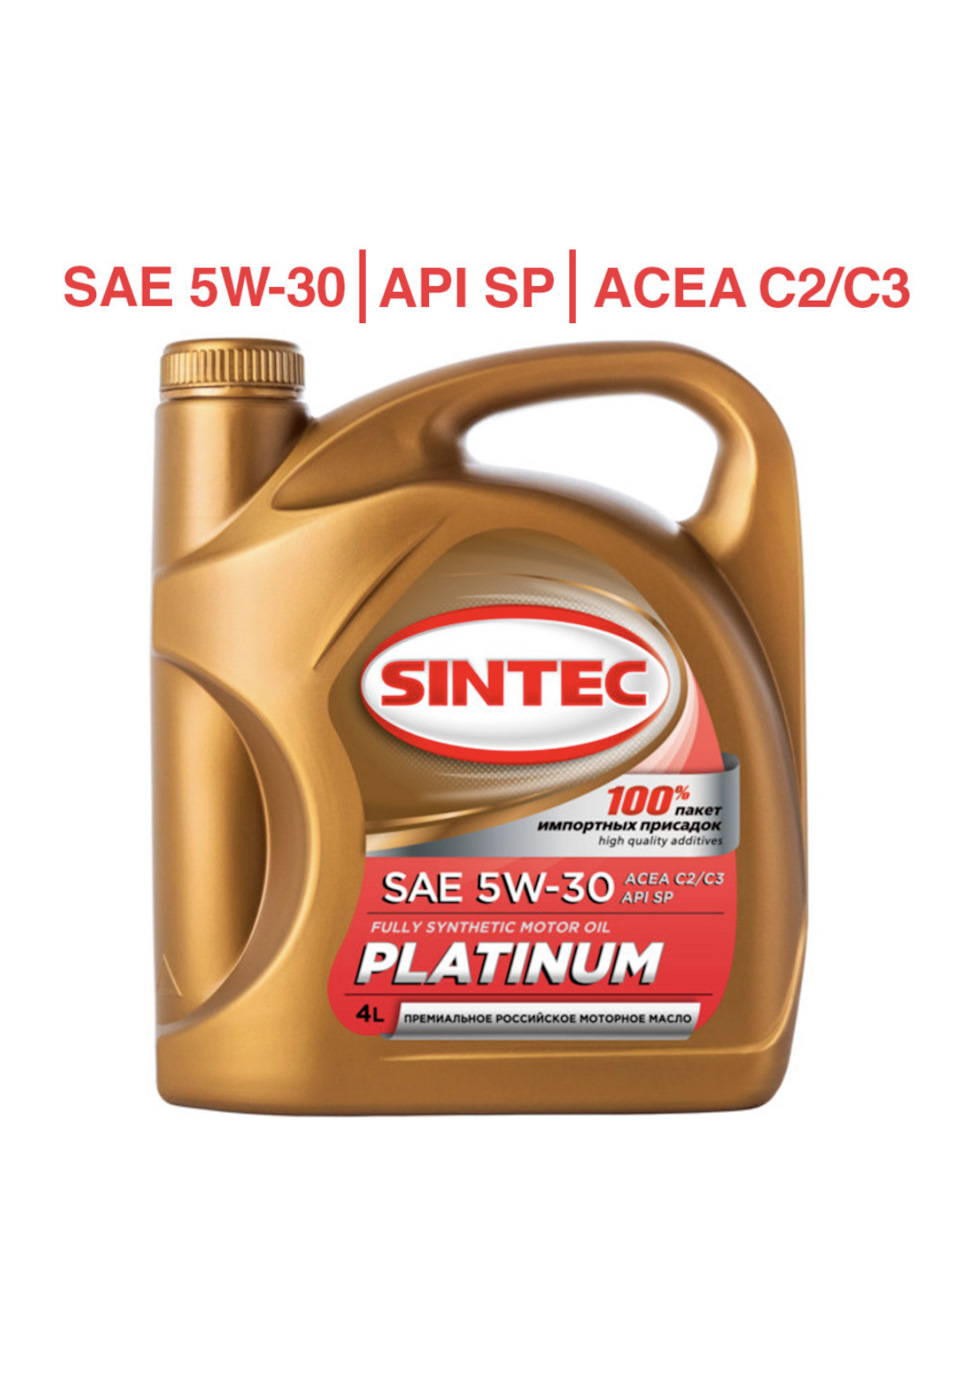 Sintec 5w40 отзывы. Sintec Premium 5w-30 a3/b4. 801969 Sintec. Моторное масло Синтек 5w30 премиум. 801969 Sintec Sintec премиум SAE 5w-30 ACEA a3/b4 (синт) 4л.